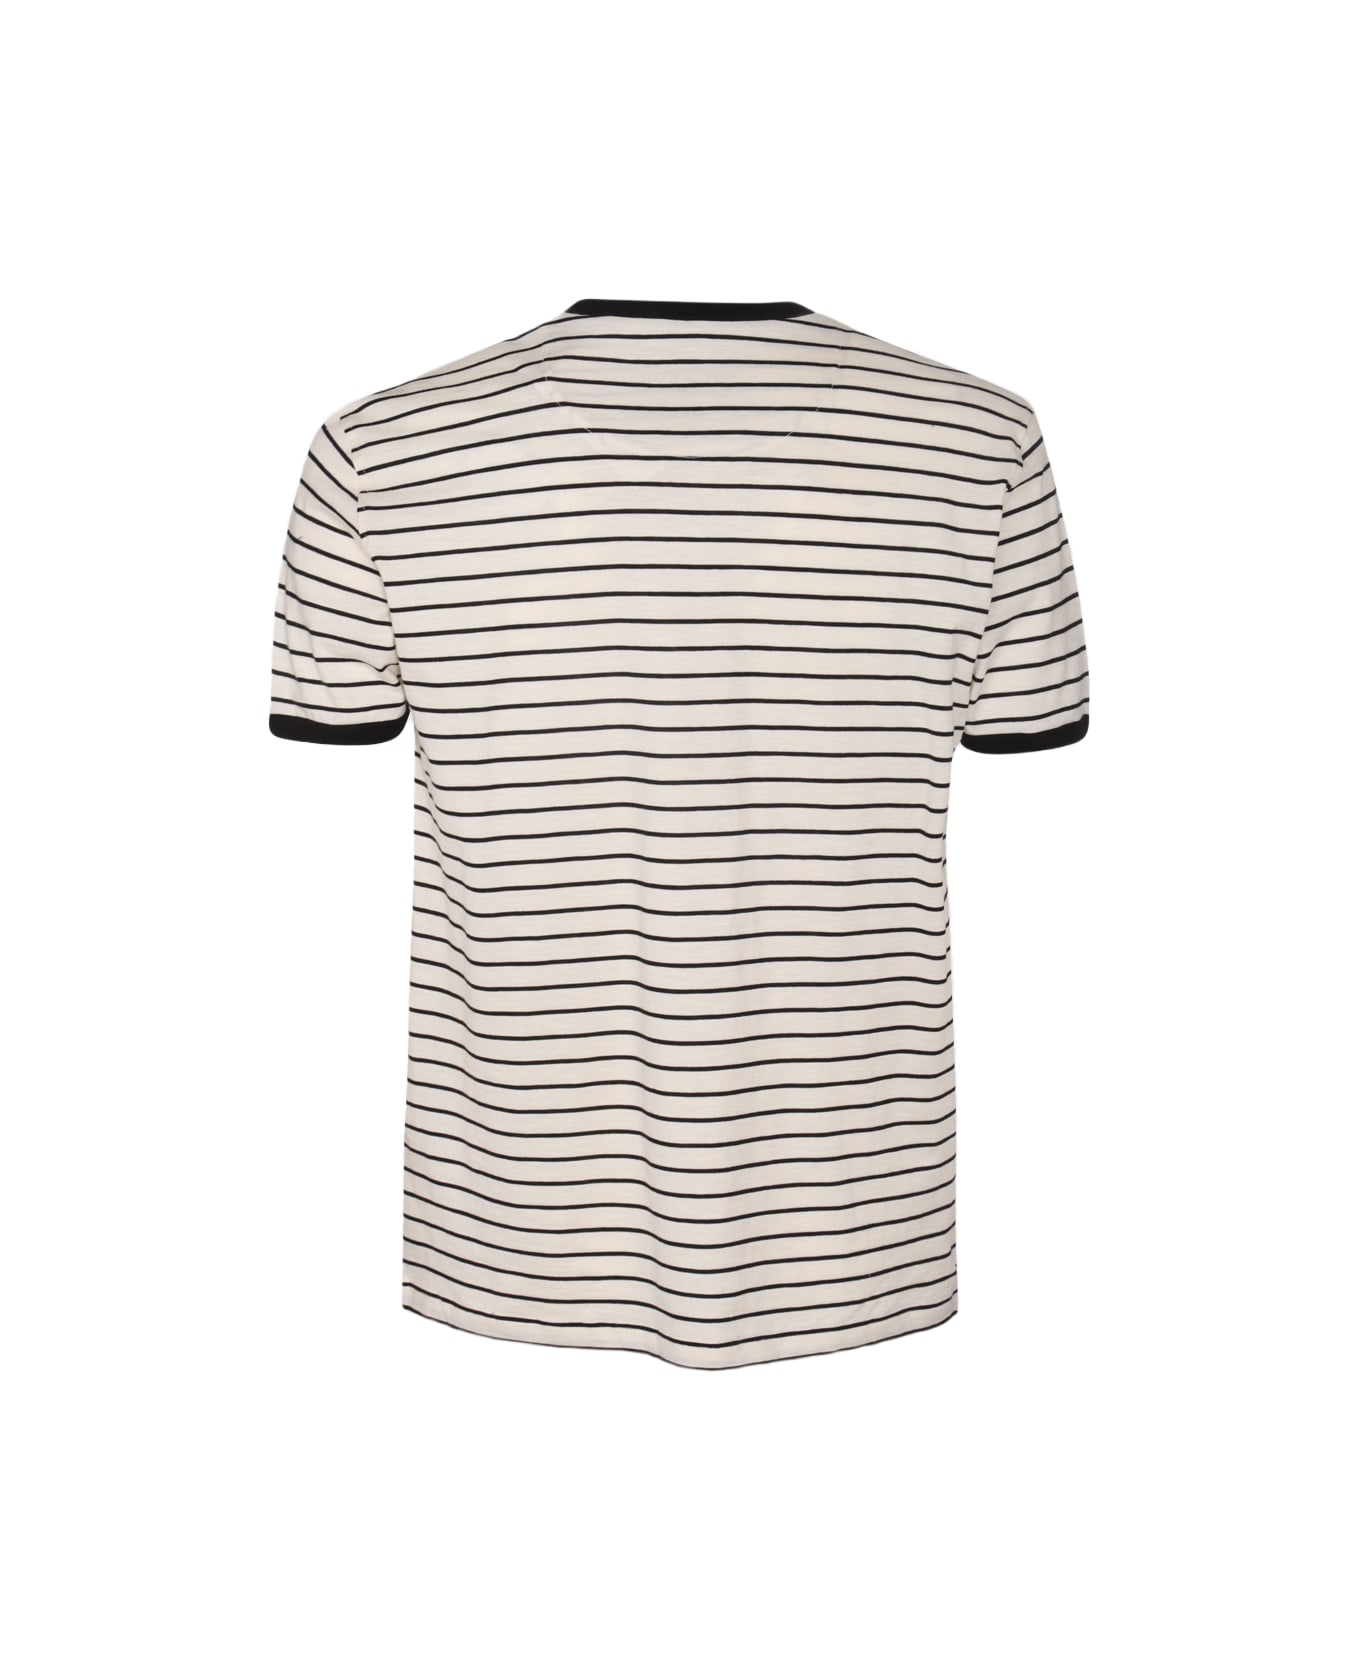 PT Torino Black And White Cotton Stripe T-shirt - Black シャツ